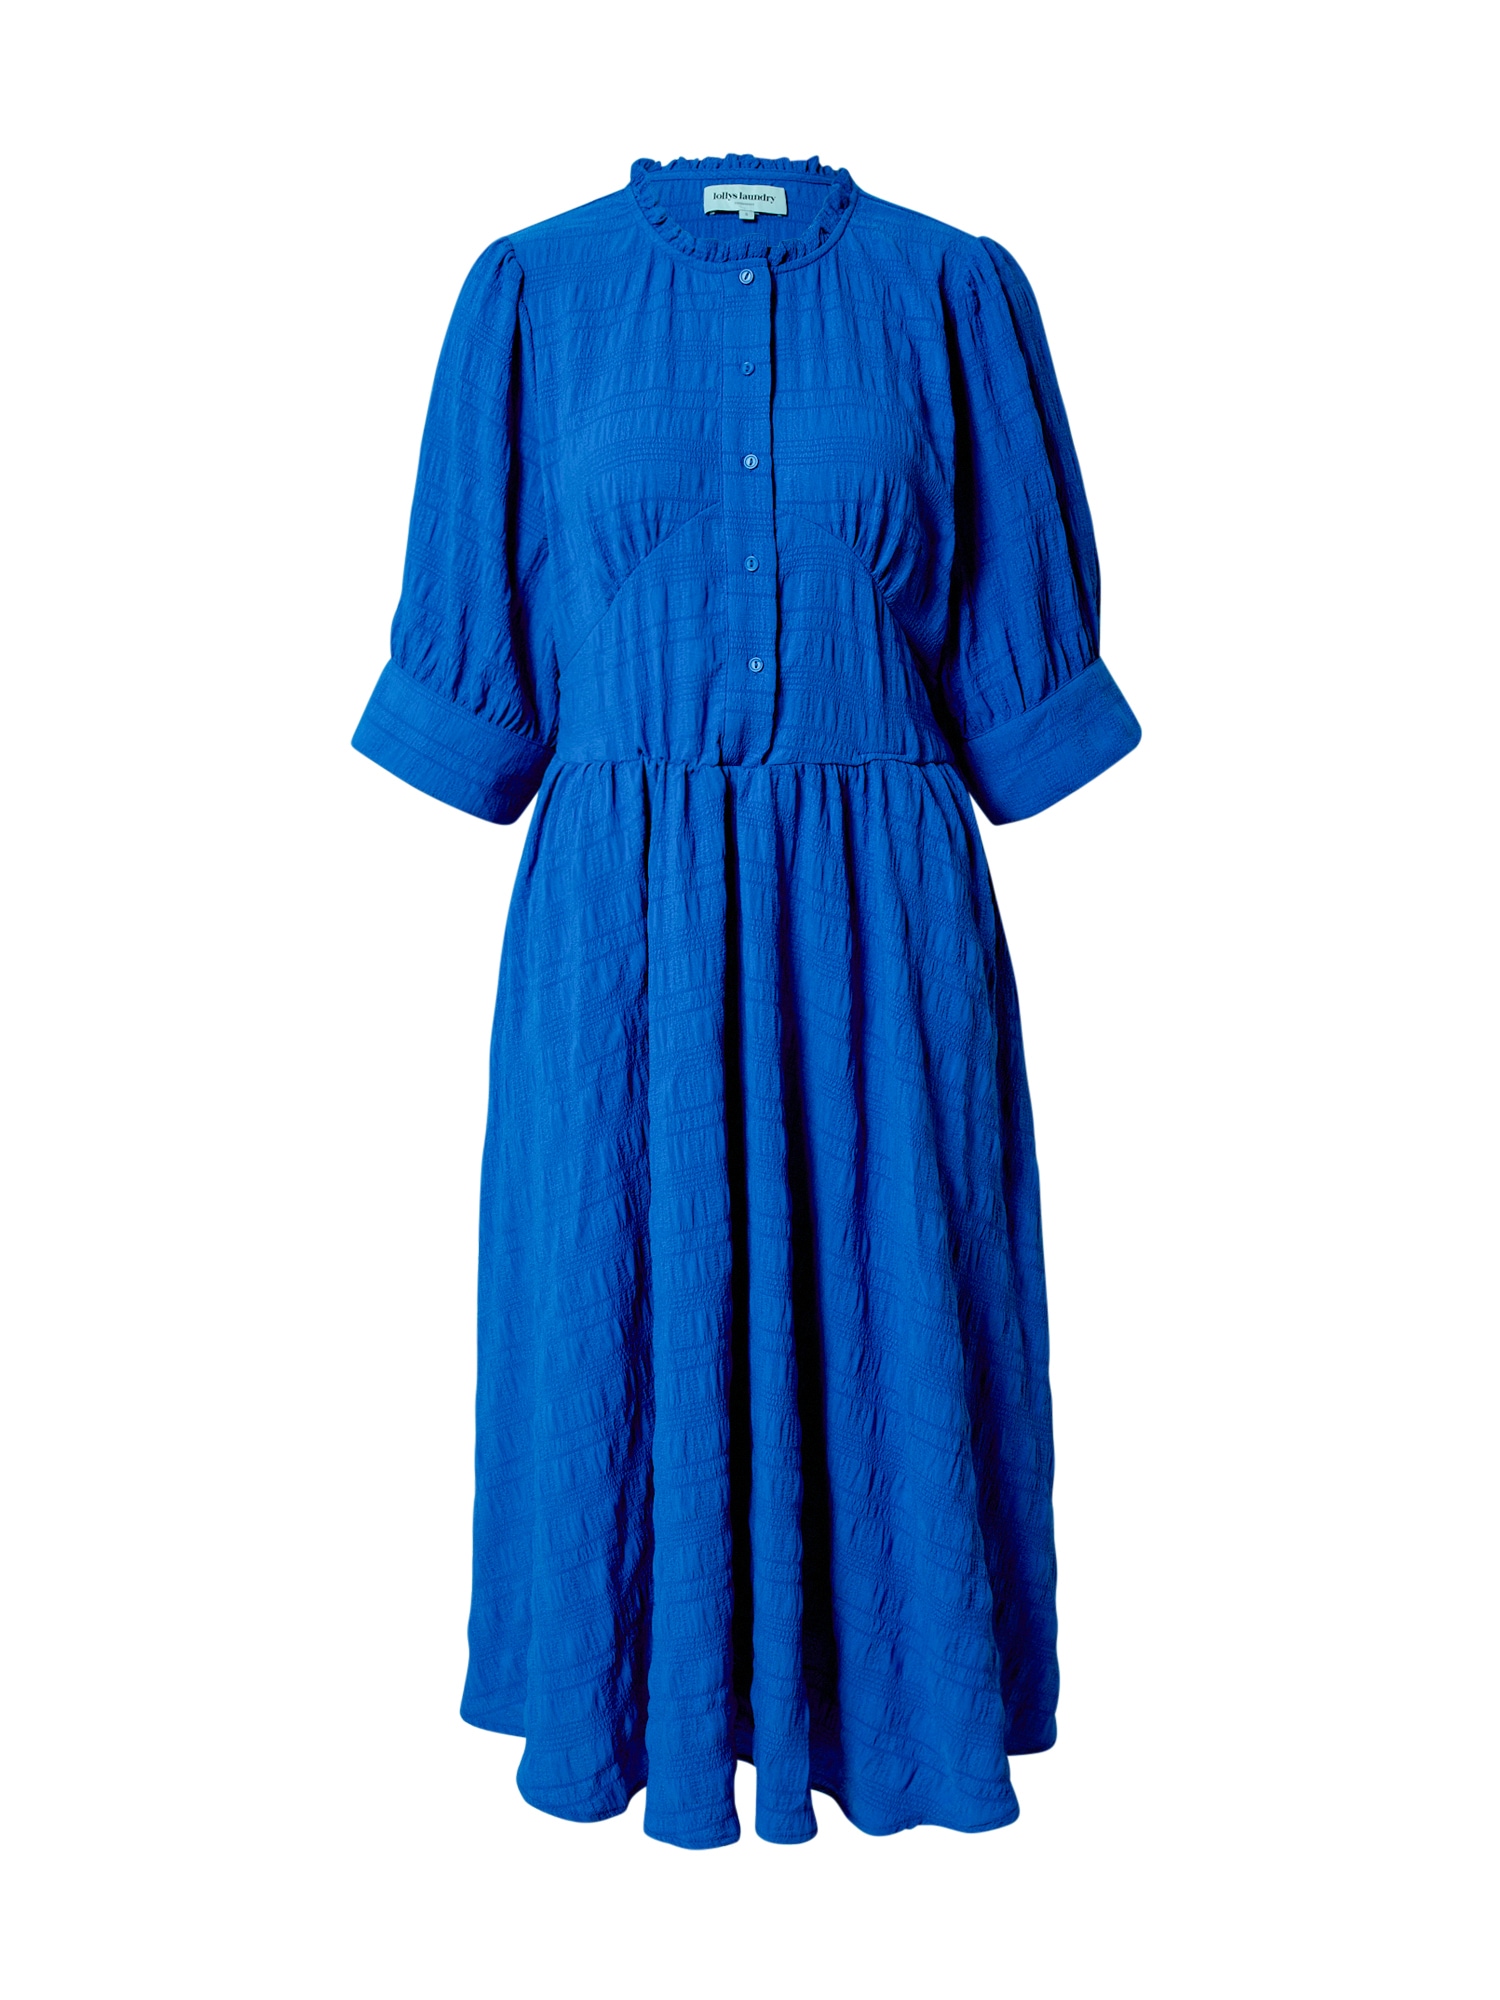 Lollys Laundry Dolga srajca 'Boston'  kraljevo modra